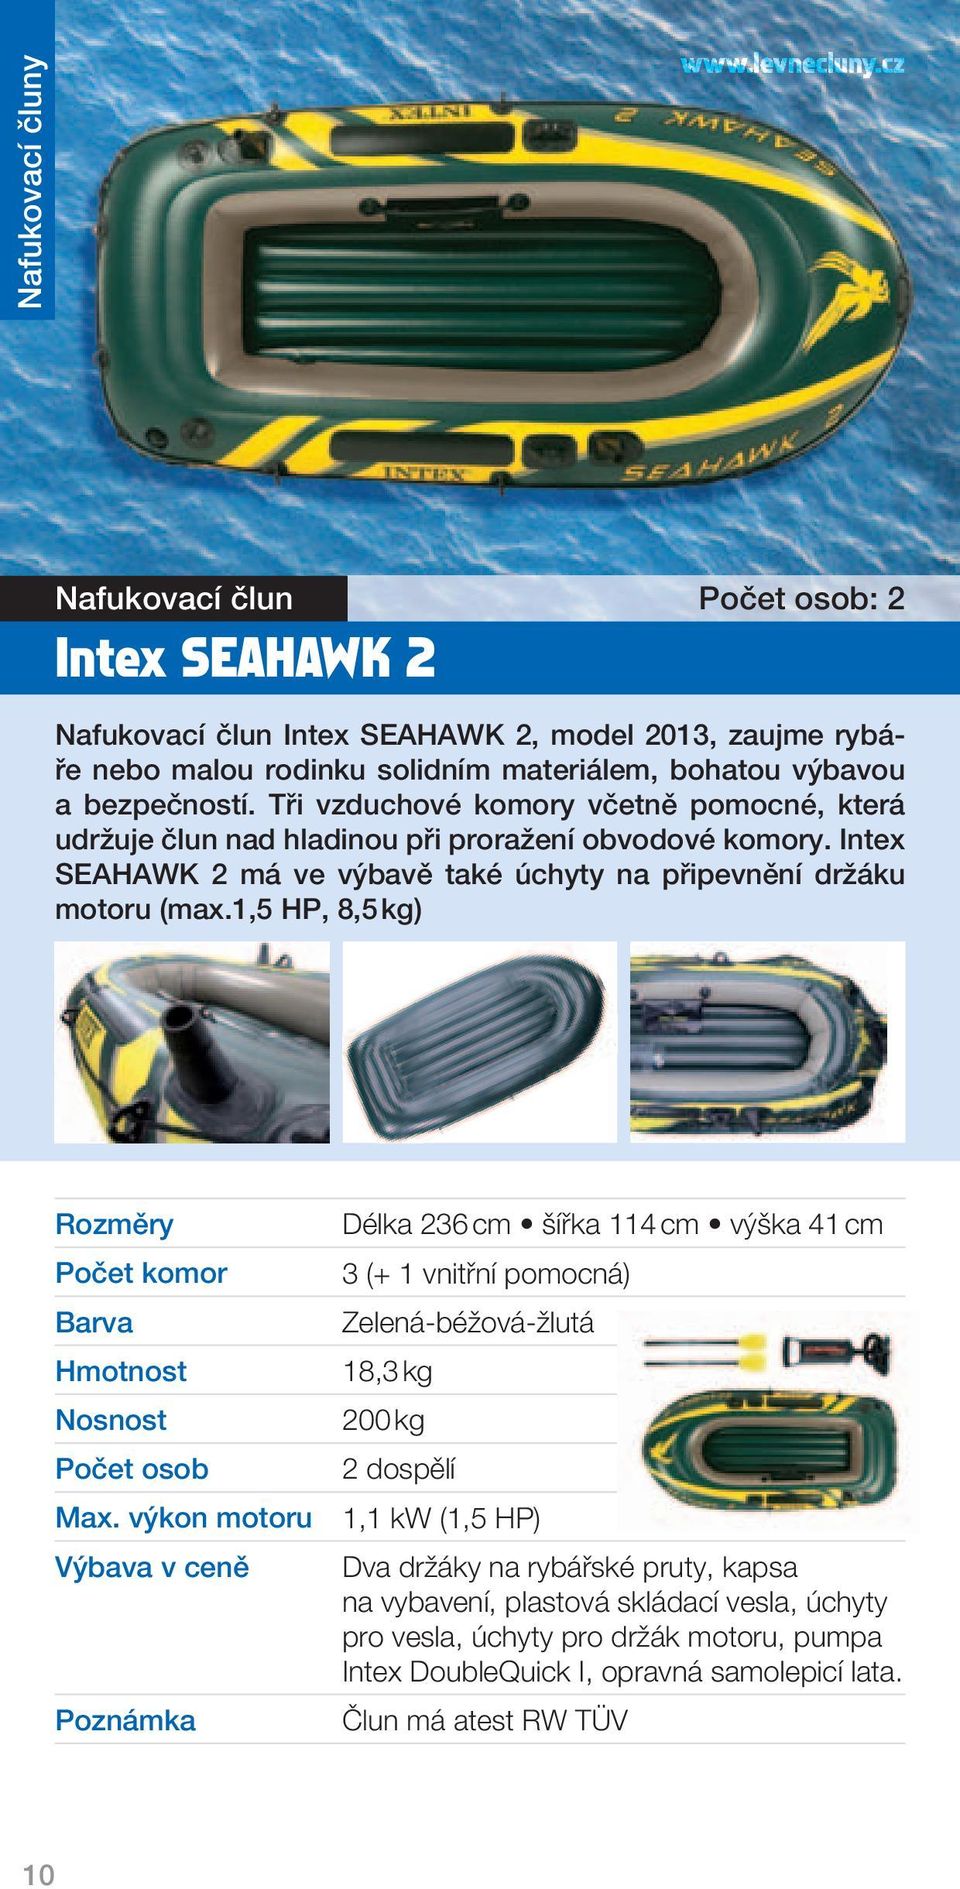 Tři vzduchové komory včetně pomocné, která udržuje člun nad hladinou při proražení obvodové komory. Intex SEAHAWK 2 má ve výbavě také úchyty na připevnění držáku motoru (max.